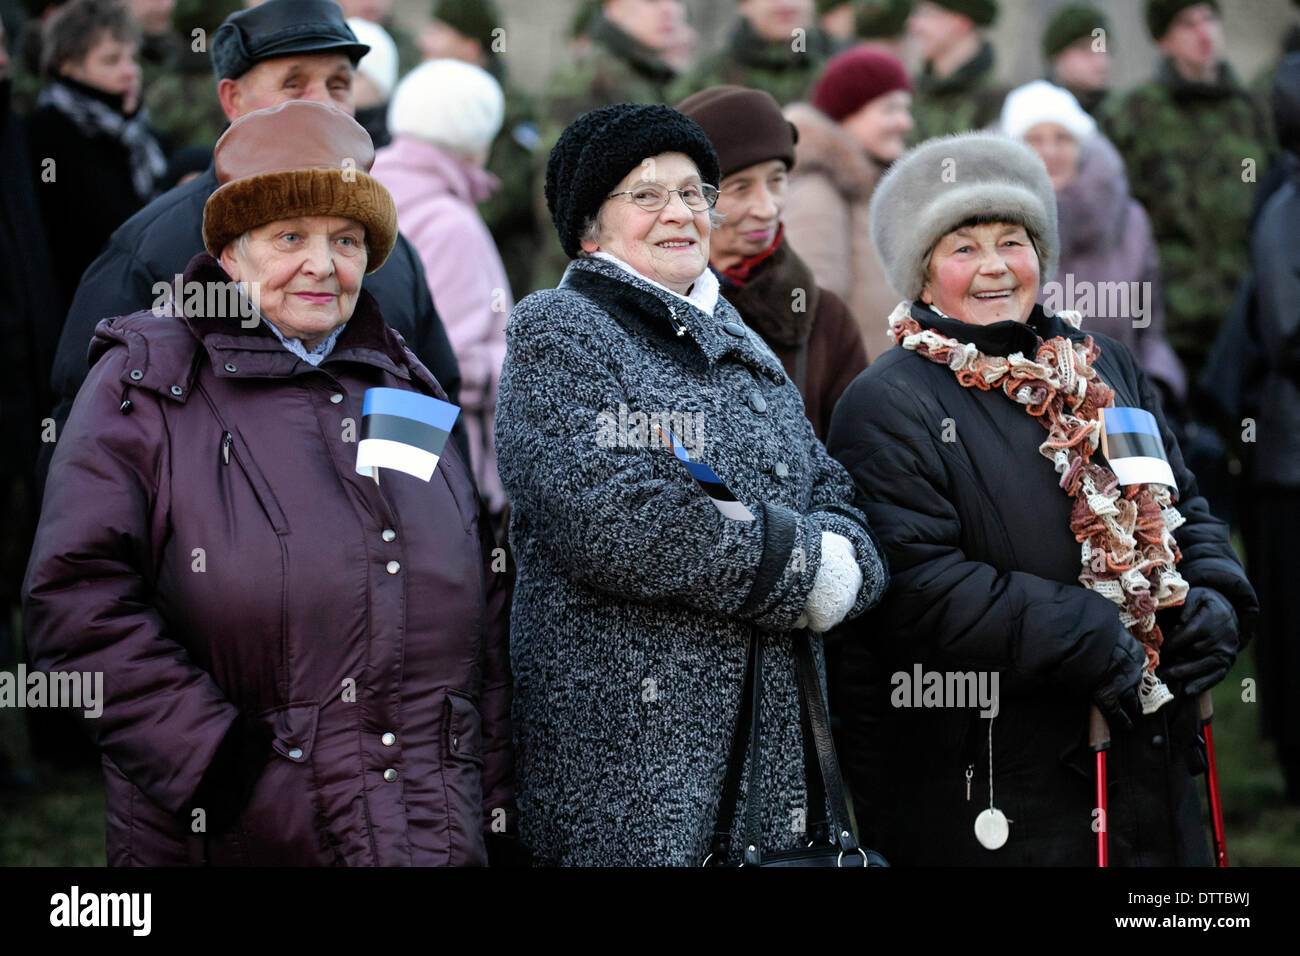 Narva, Estonie. 24 février 2014. Les gens assistent à la cérémonie de lever de drapeau à Narva, ville la plus orientale de l'Estonie, Feb 24, 2014. C'est célébrer l'Estonie 96 anniversaire de l'indépendance, le lundi, et la première cérémonie de lever de drapeau dans le pays aurait lieu dans la ville de Narva. (Xinhua/Sergei Stepanov/Alamy Live News) Banque D'Images